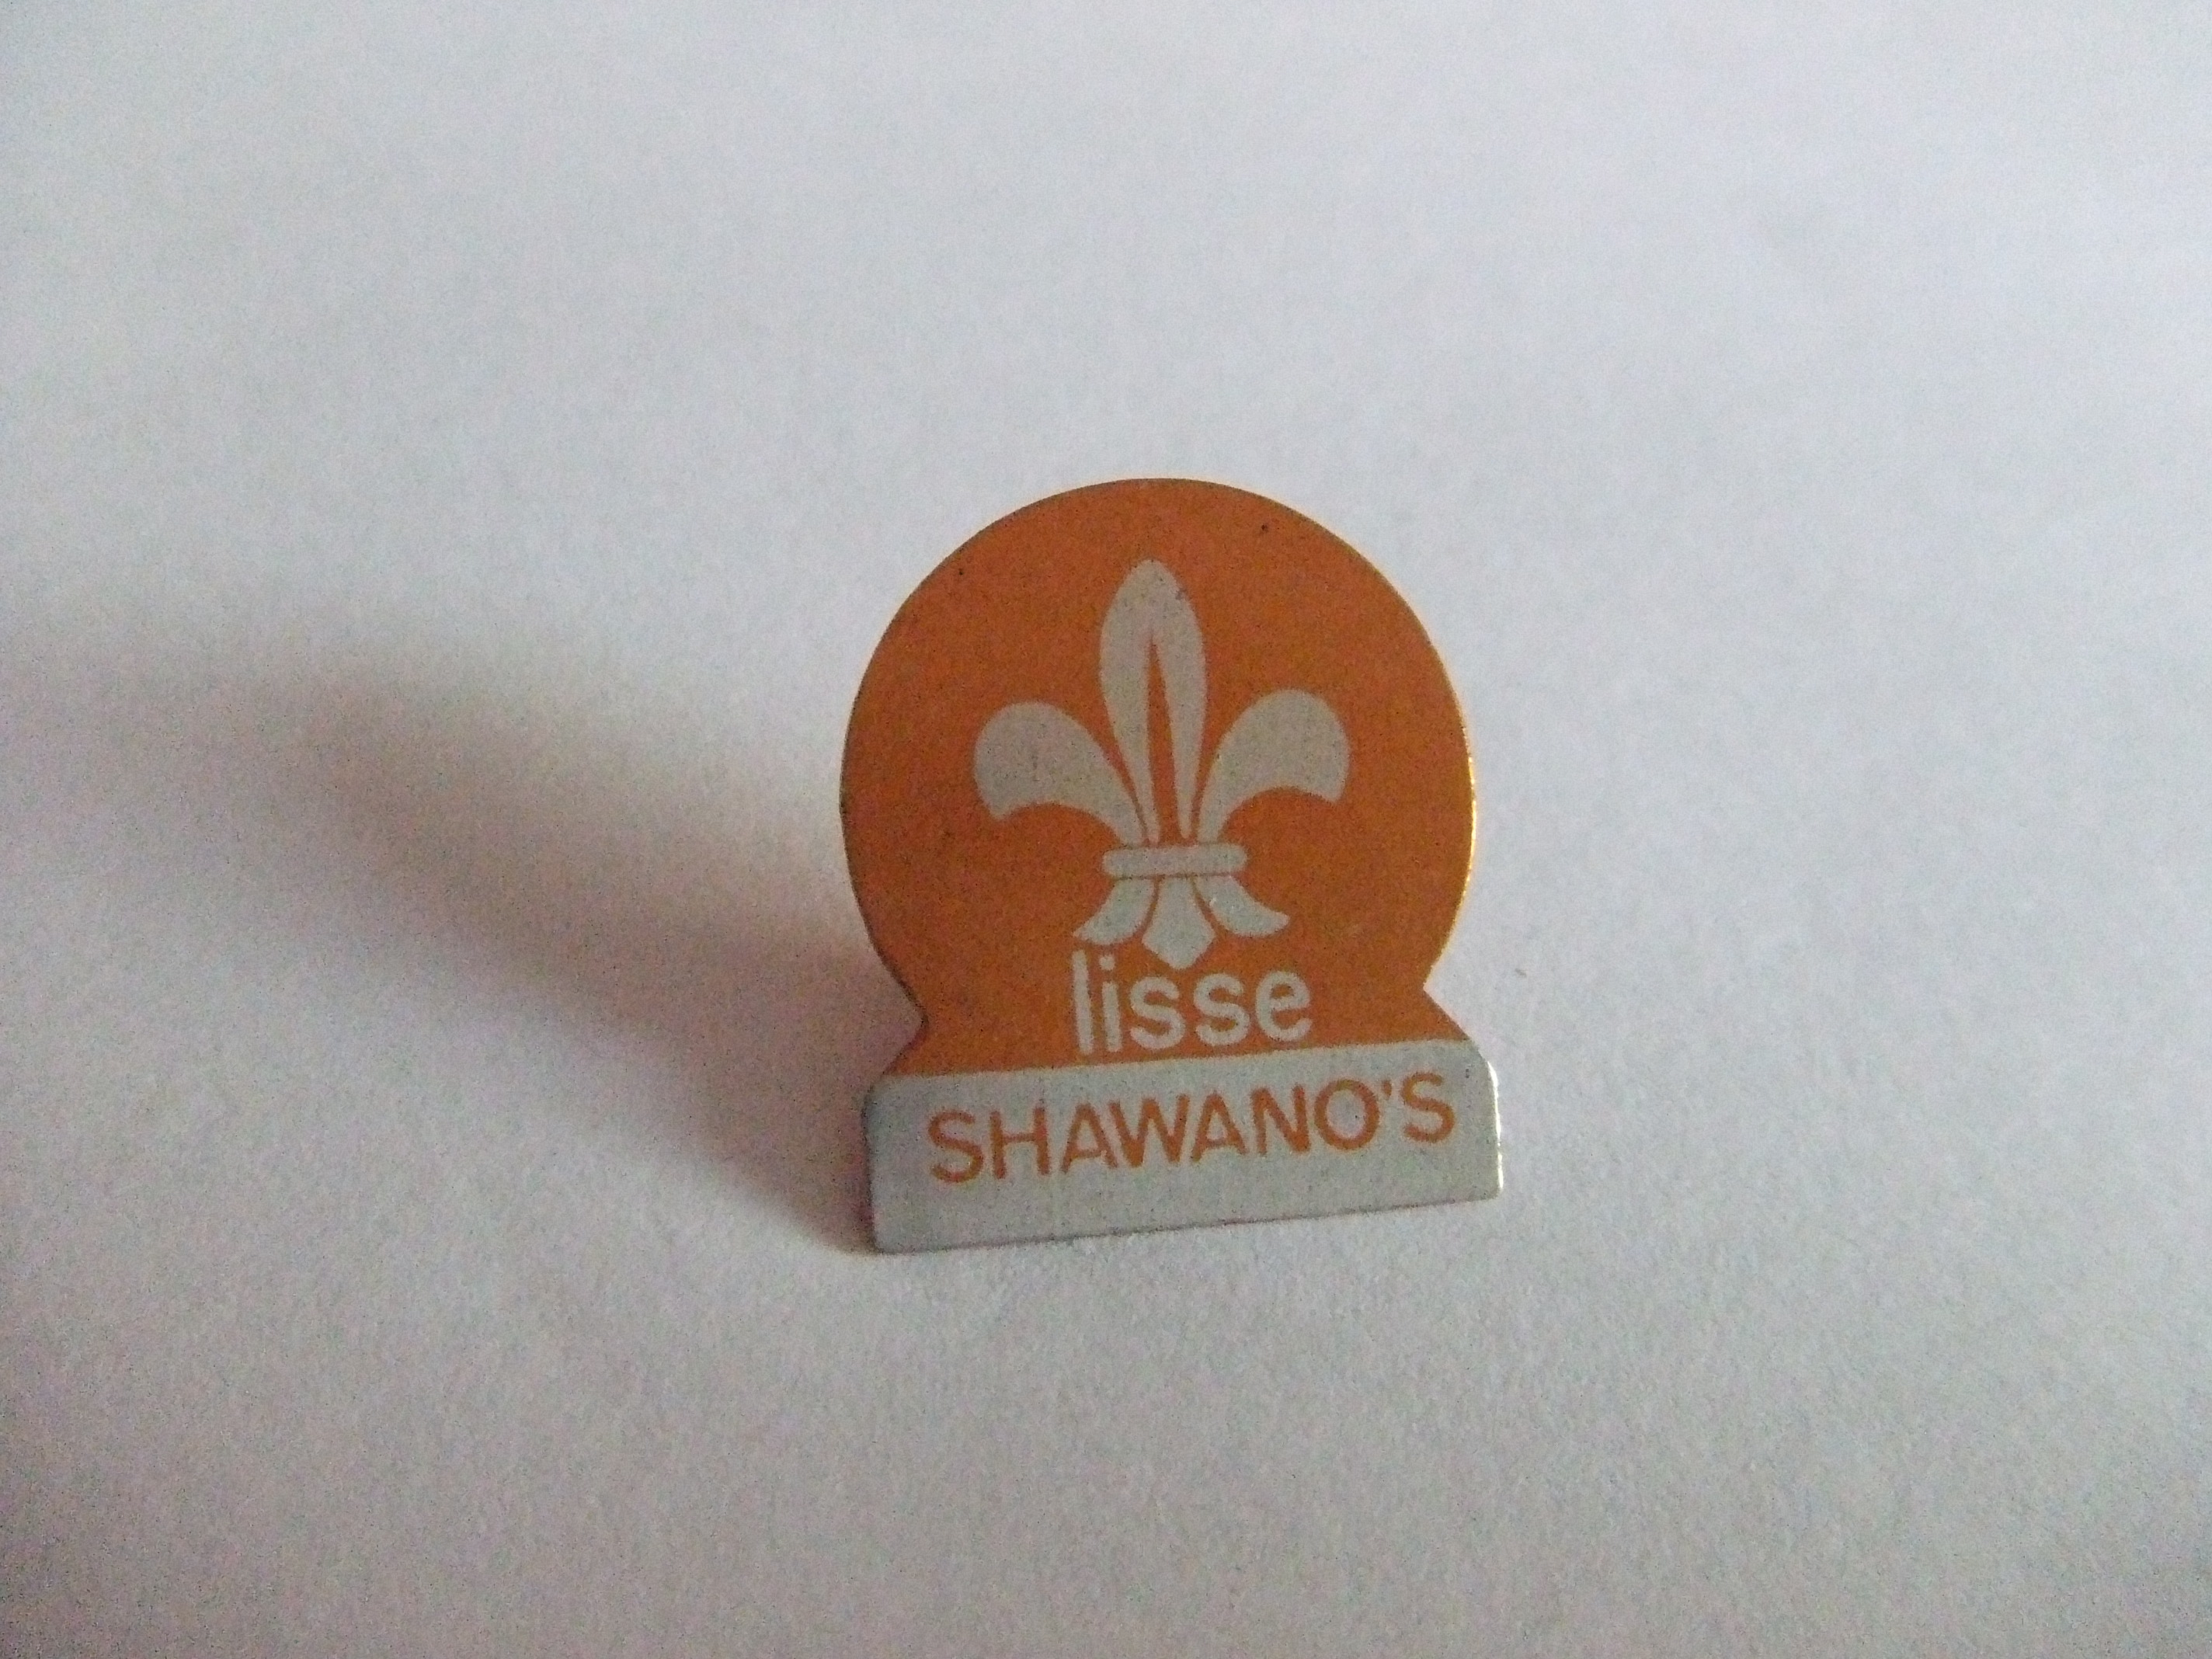 Scouting Shawano's Lisse oranje